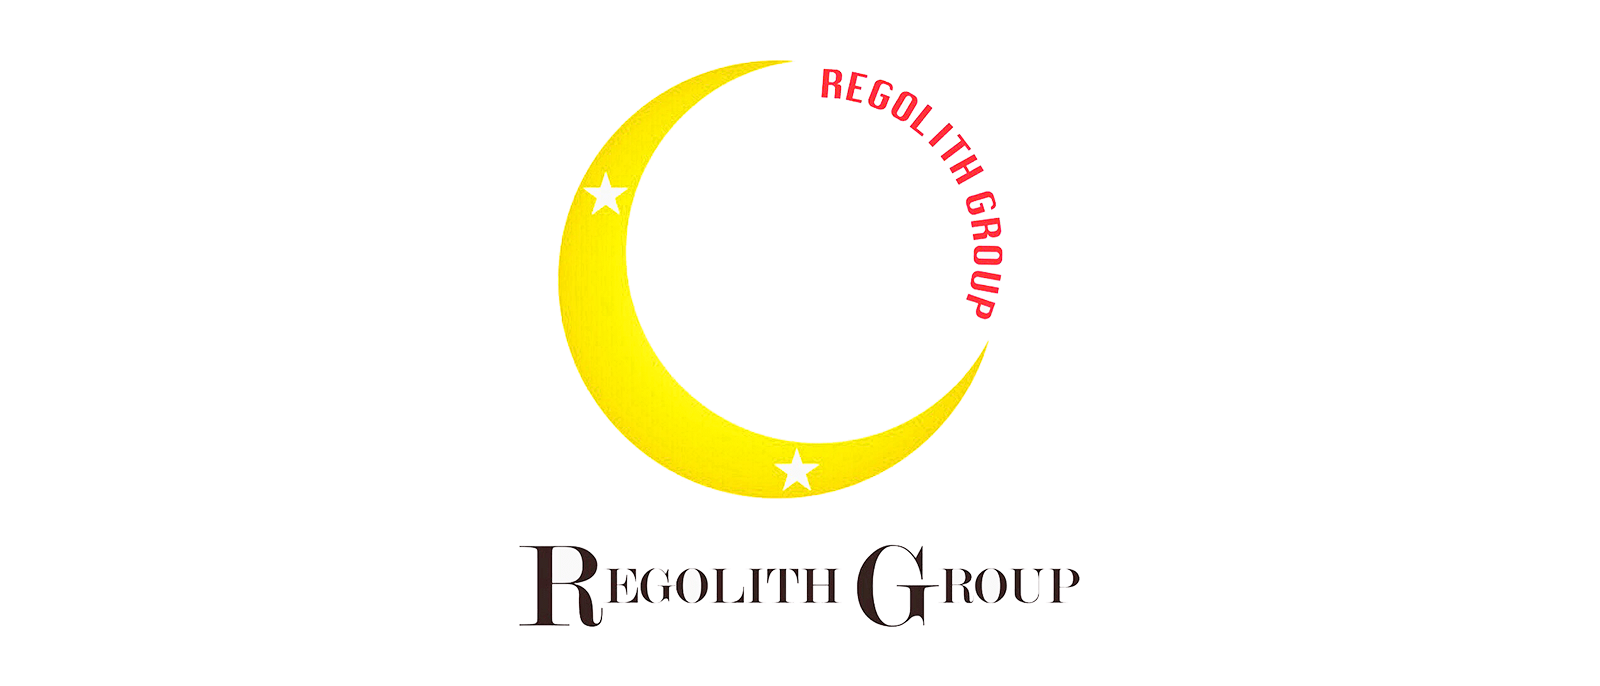 REGOLITH GROUP